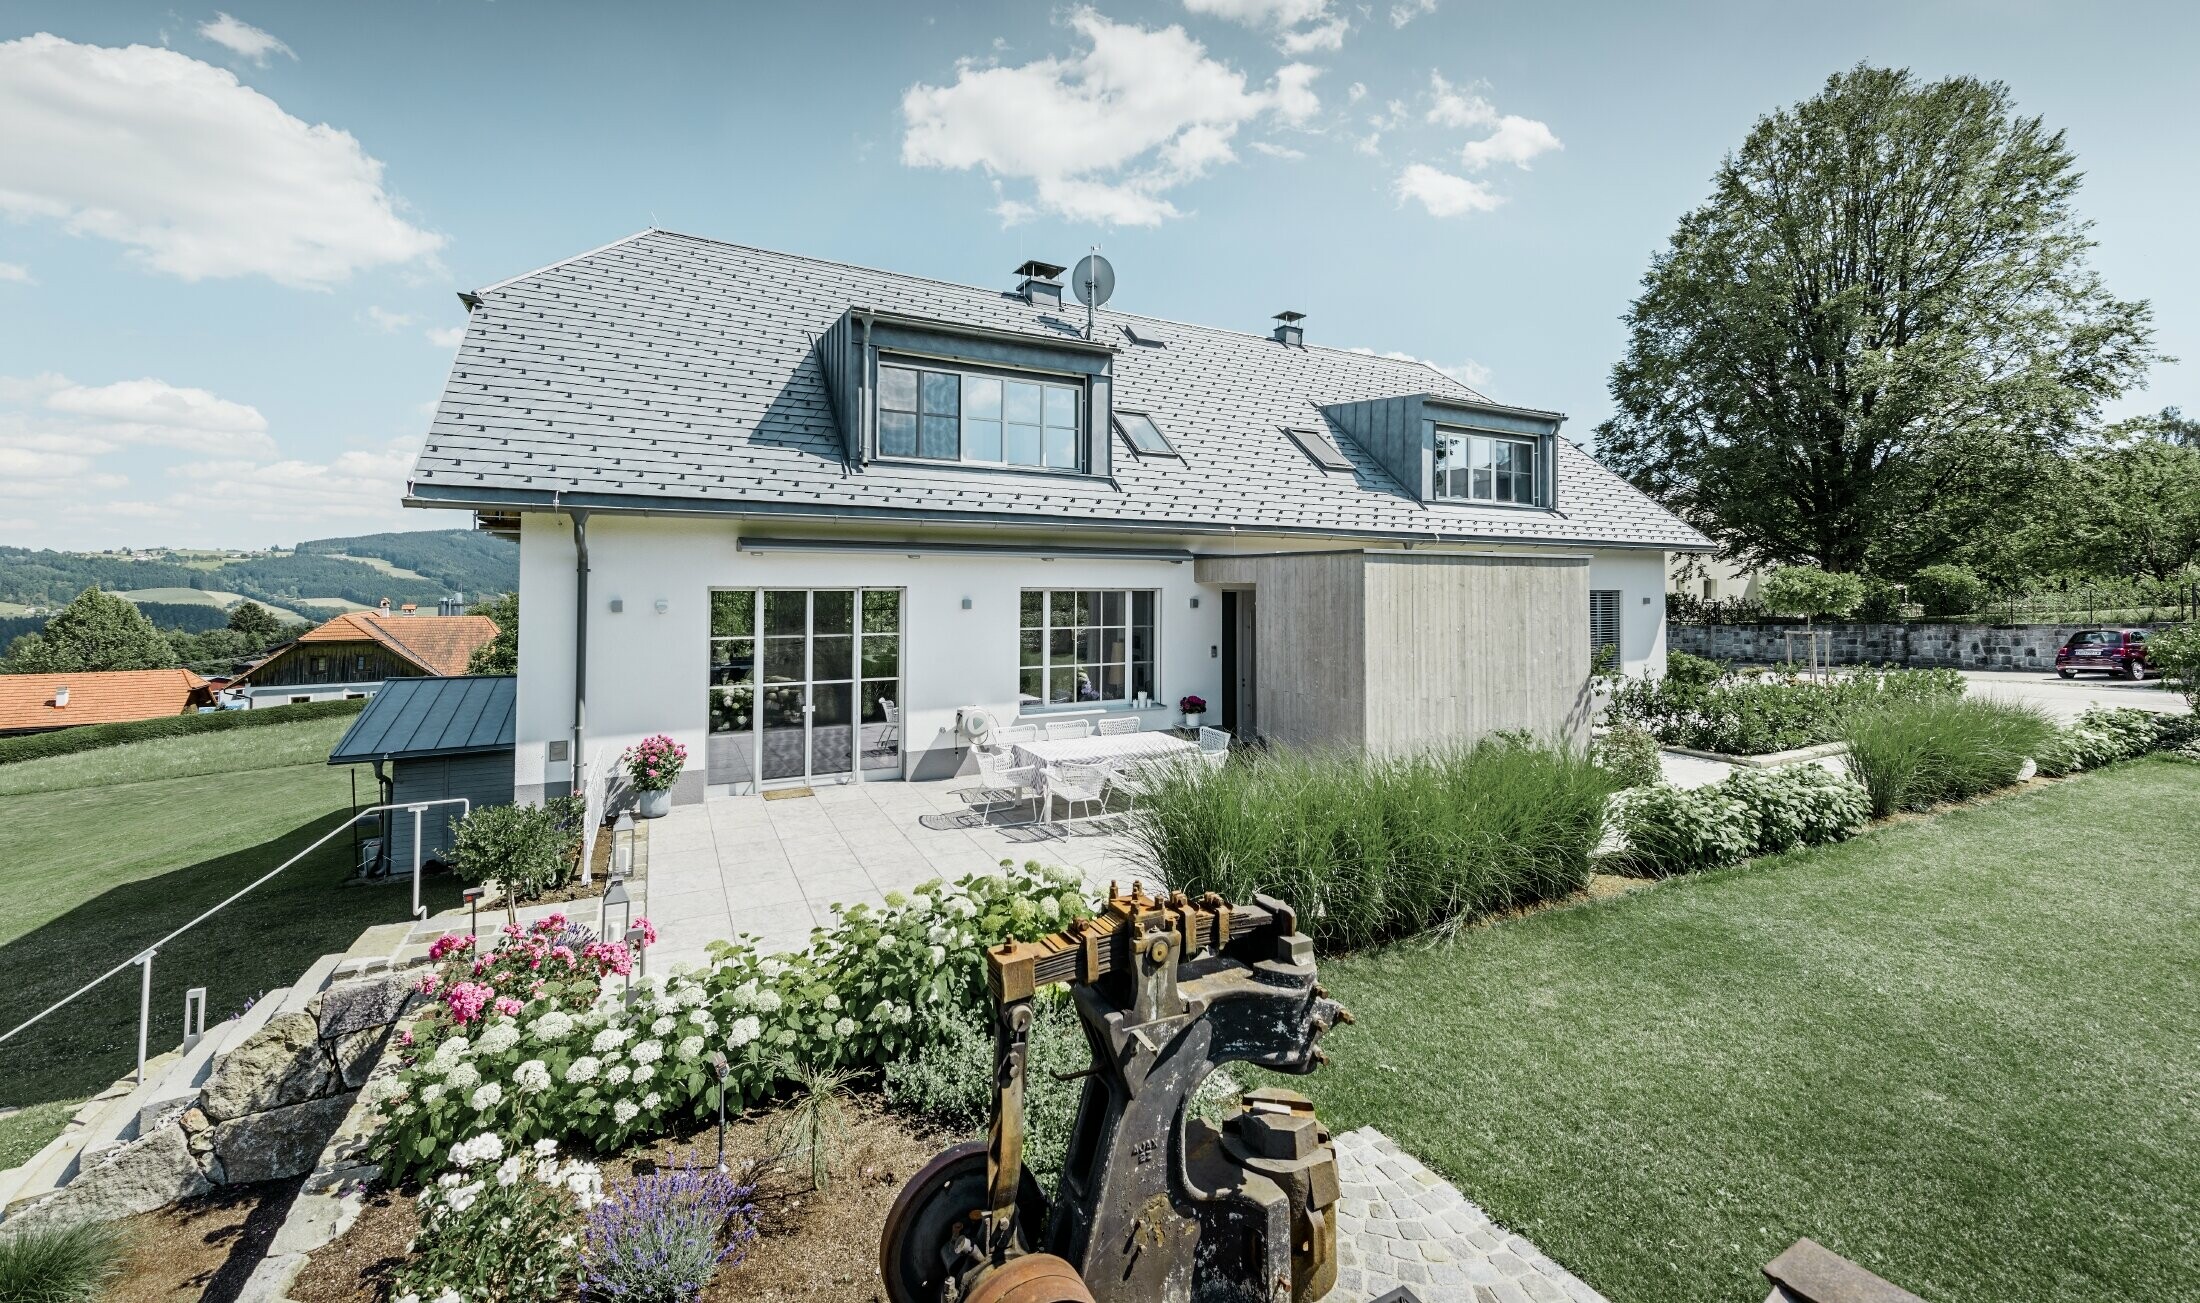 Klassisches Einfamilienhaus mit Krüppelwalmdach; Das Haus mit Dachsanierung mit der PREFA Dachschindel in Steingrau mit schön angelegtem Garten und großzügiger Terrasse.